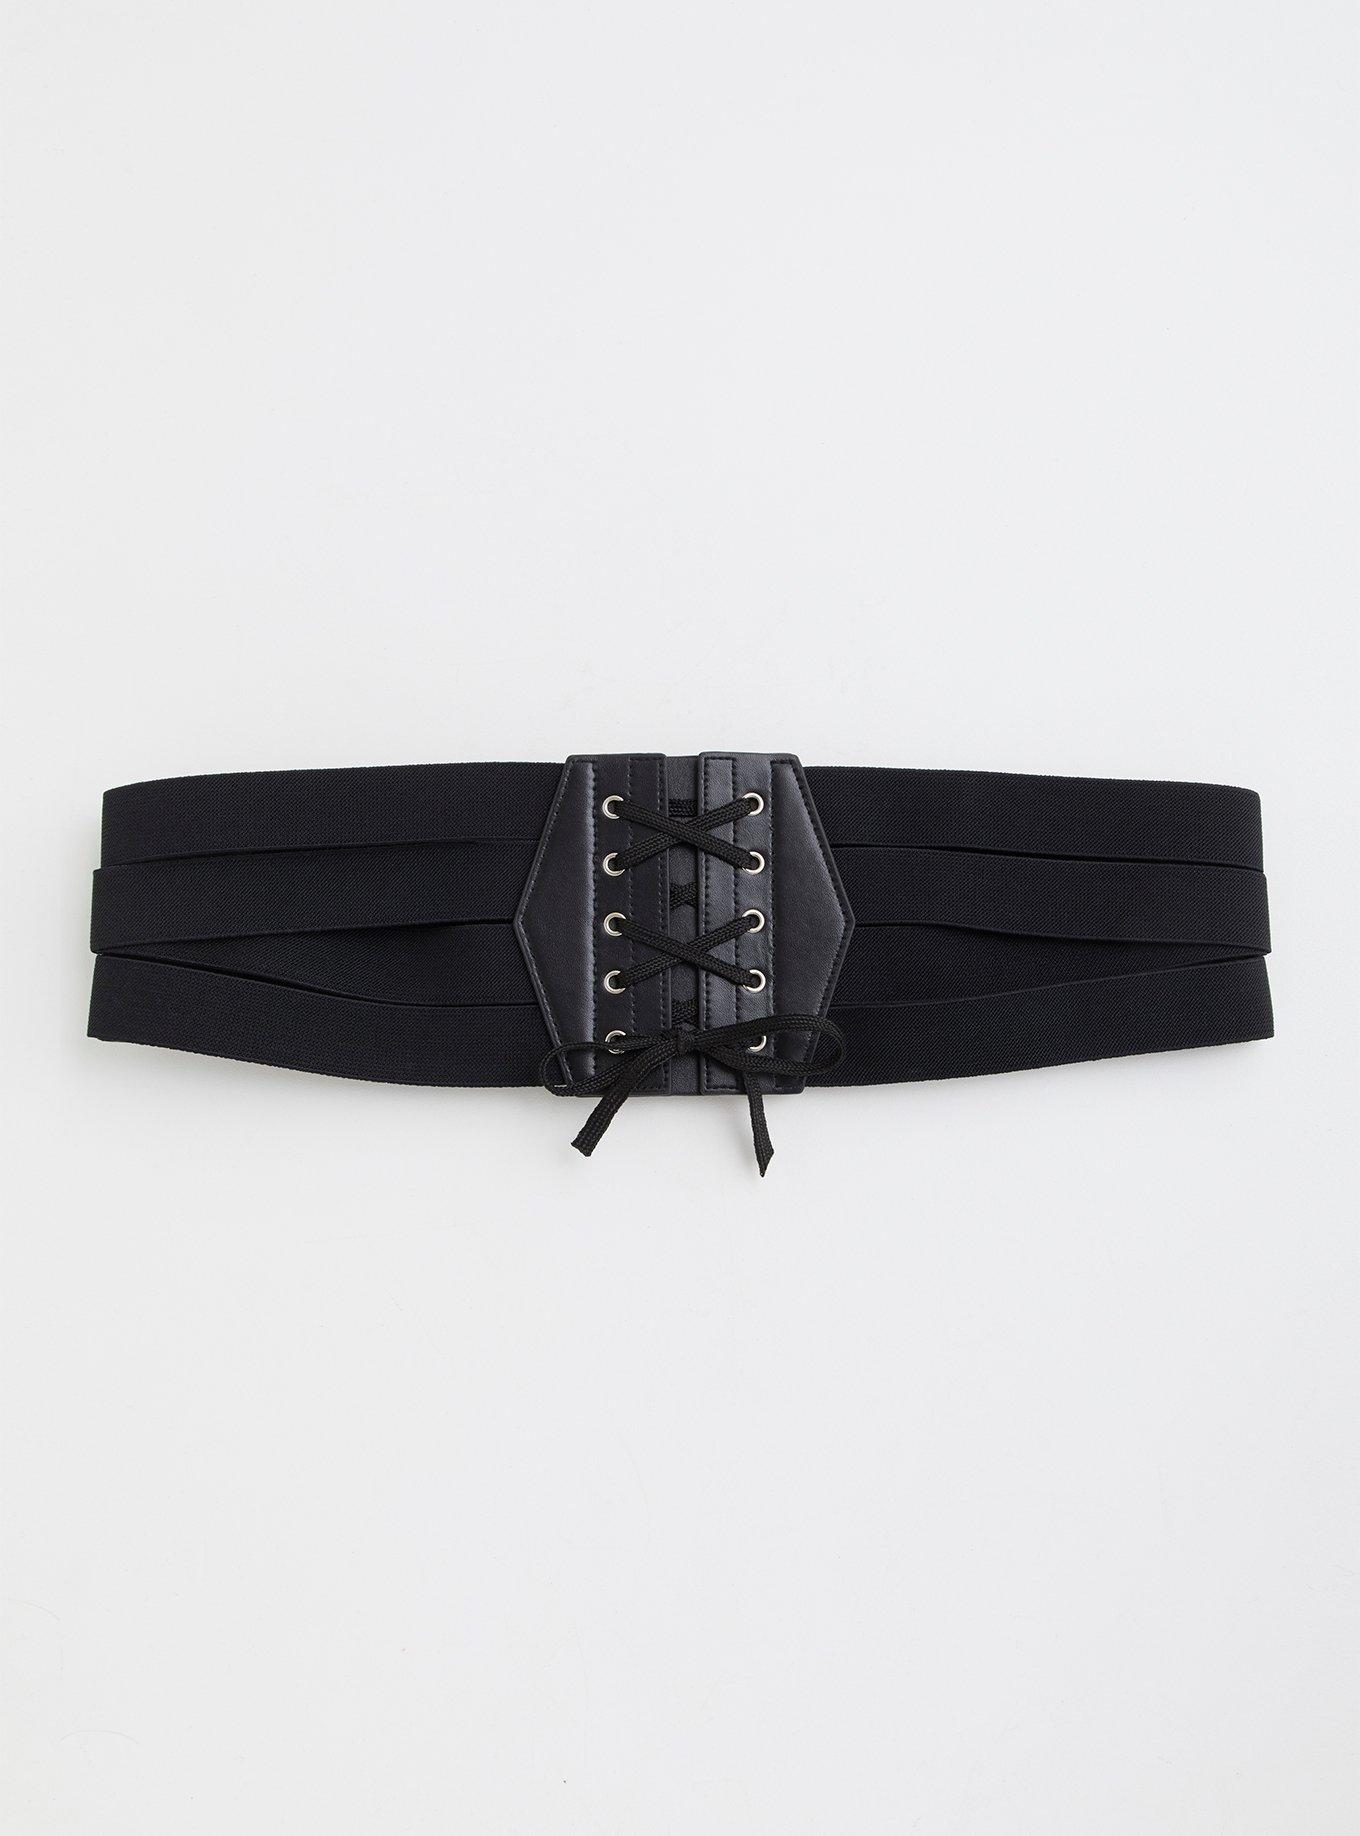 Plus Size - Black Lace-Up Corset Belt - Torrid